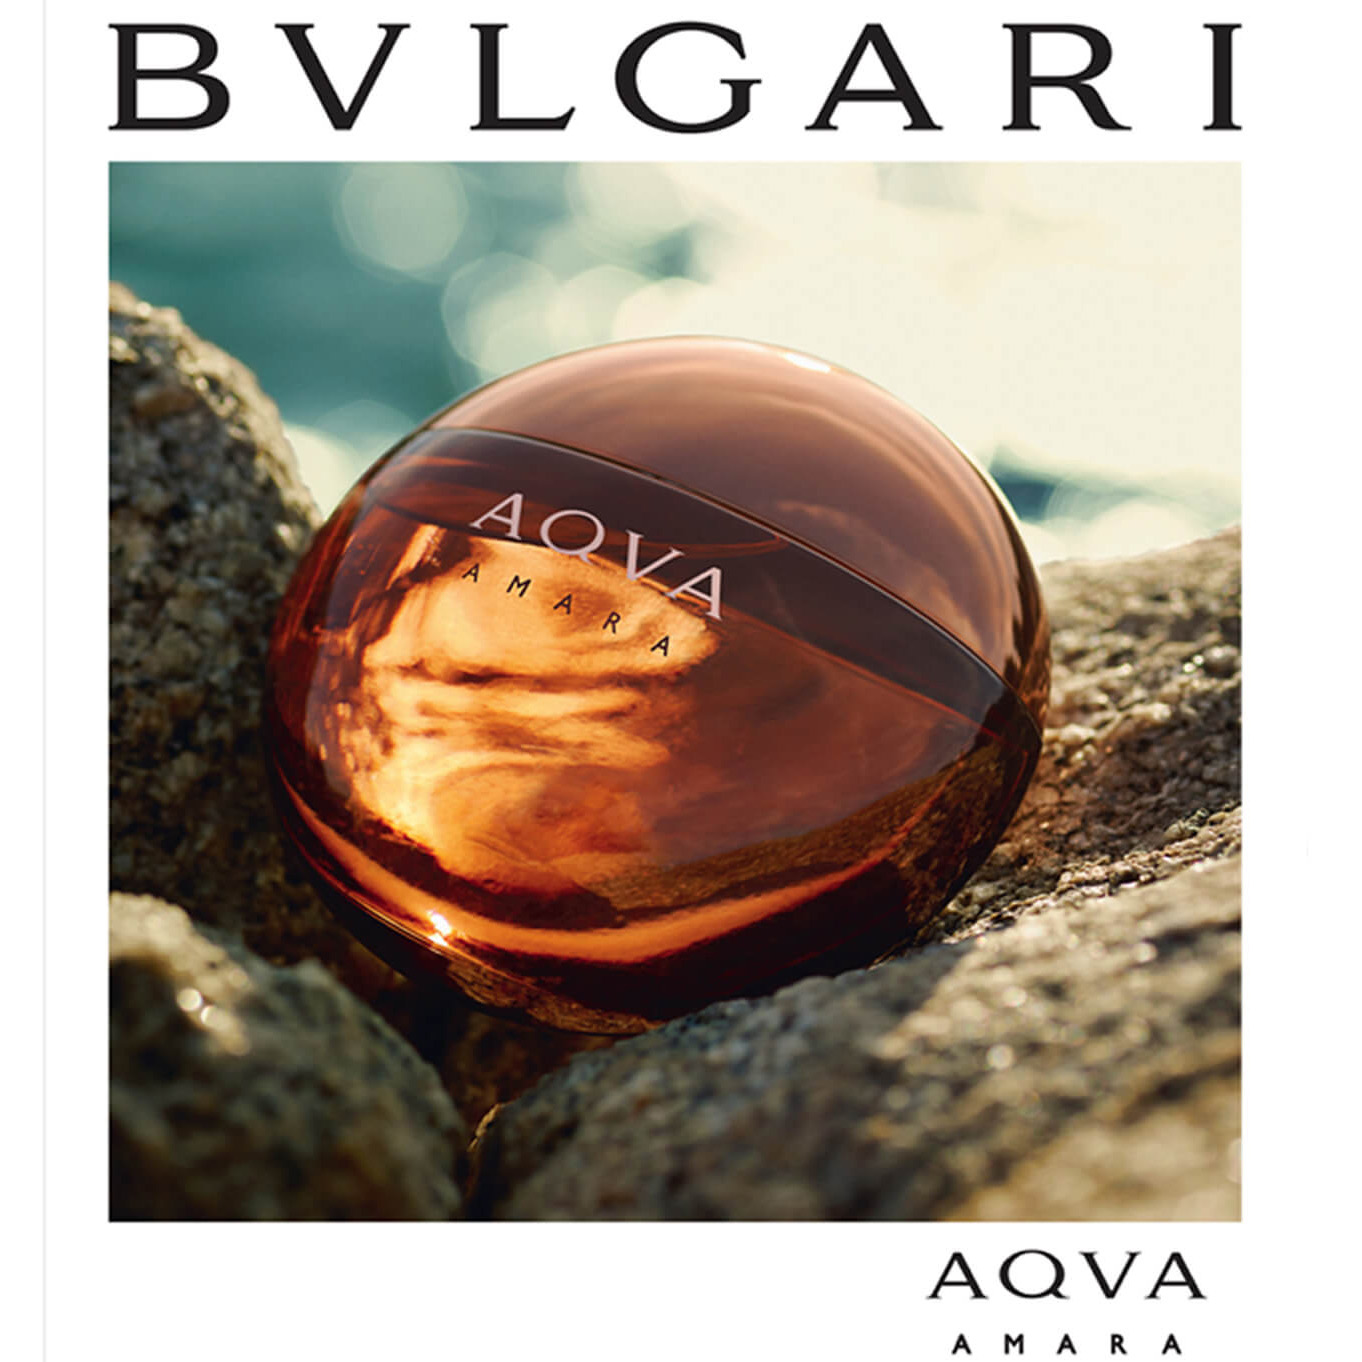 Bvlgari - Aqva Amara eau de toilette parfüm uraknak